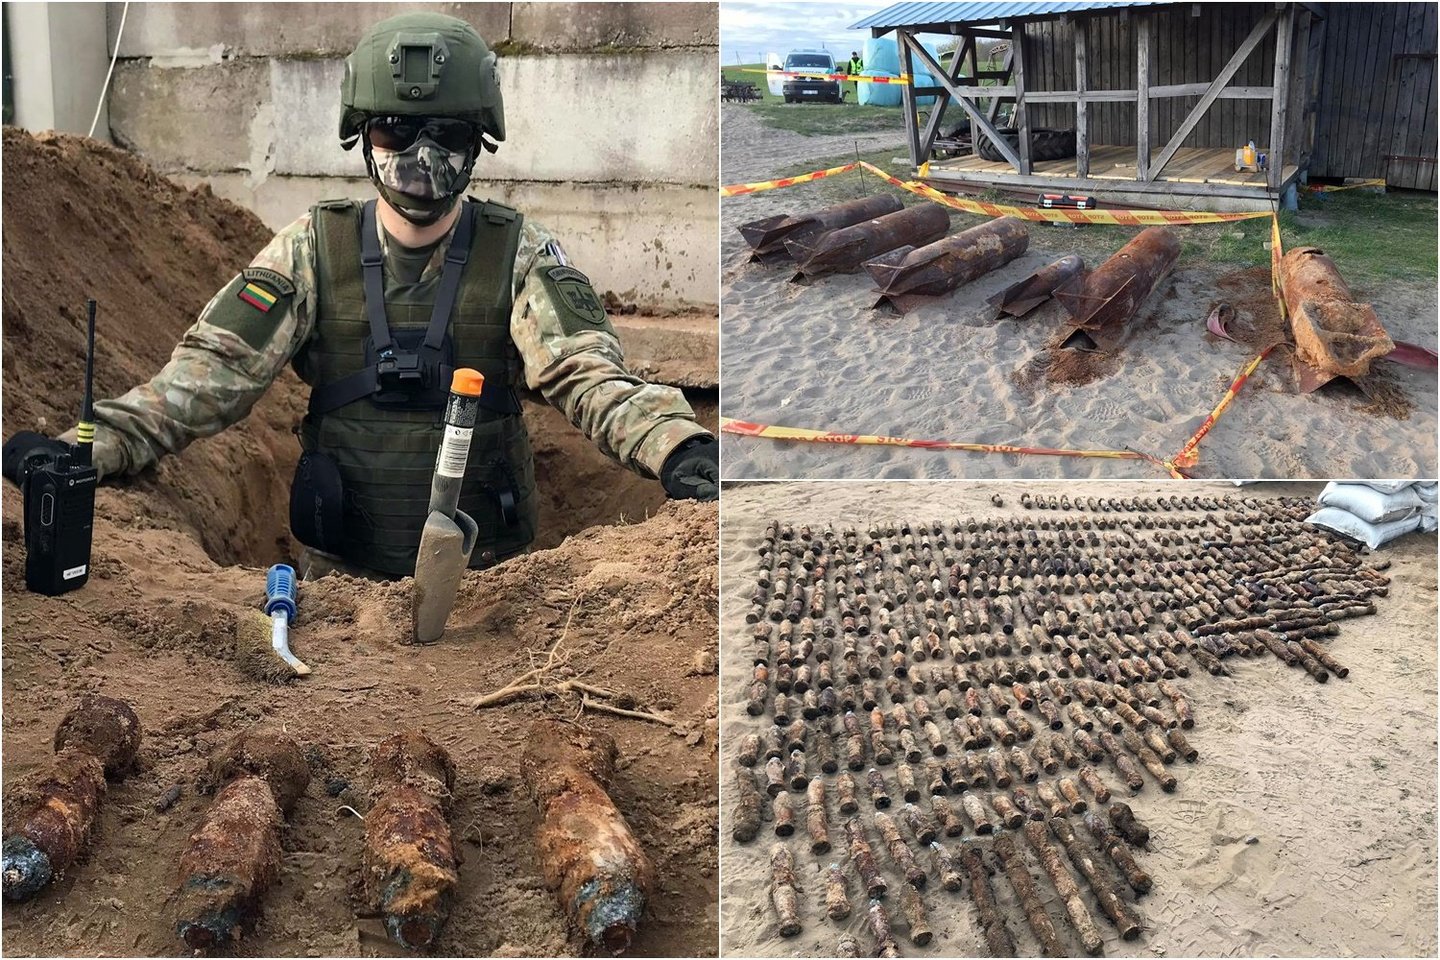  Kariuomenės išminuotojai sekmadienį vienoje sodyboje netoli Kryžkalnio sunaikino įspūdingą sprogmenų arsenalą.<br> Facebook/Juozo Vitkaus inžinerijos batalionas nuotr.